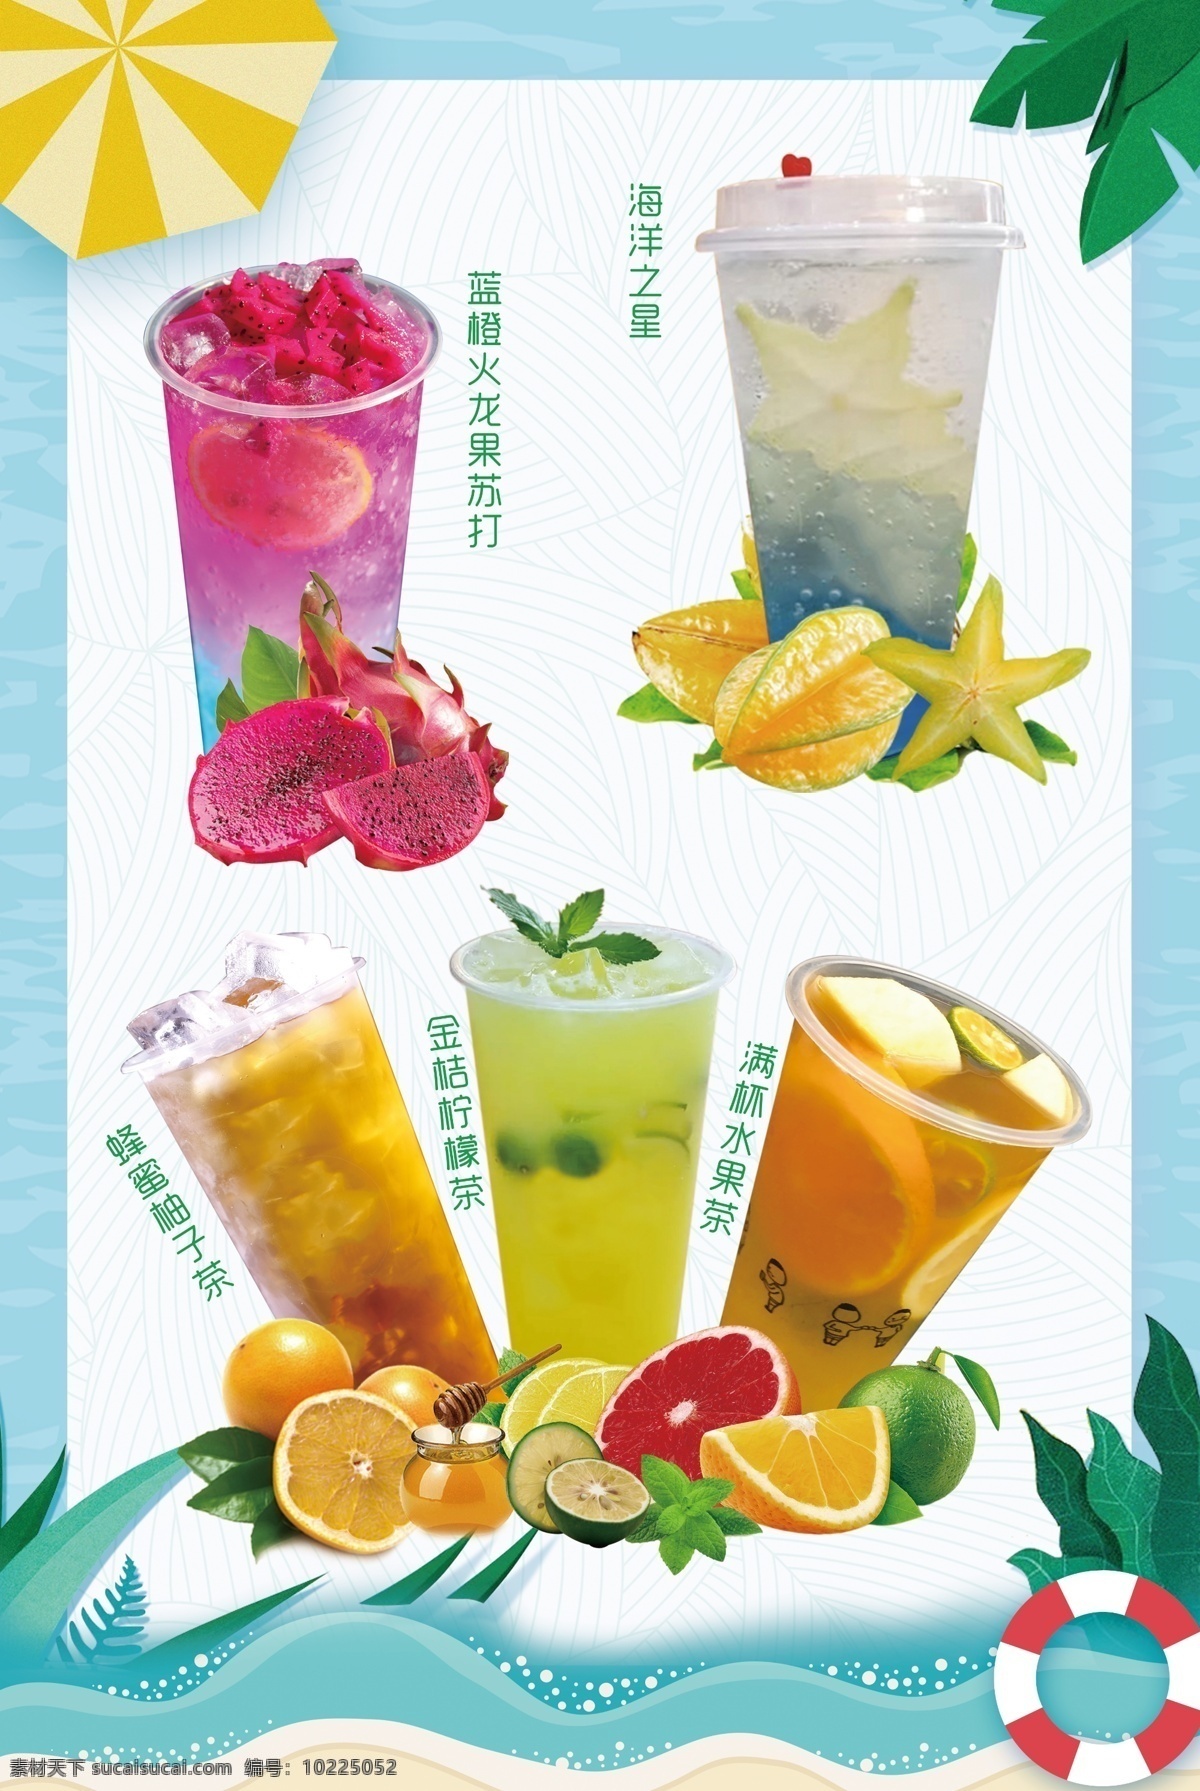 夏日饮品海报 水果茶海报 饮料 夏季冷饮 饮品设计